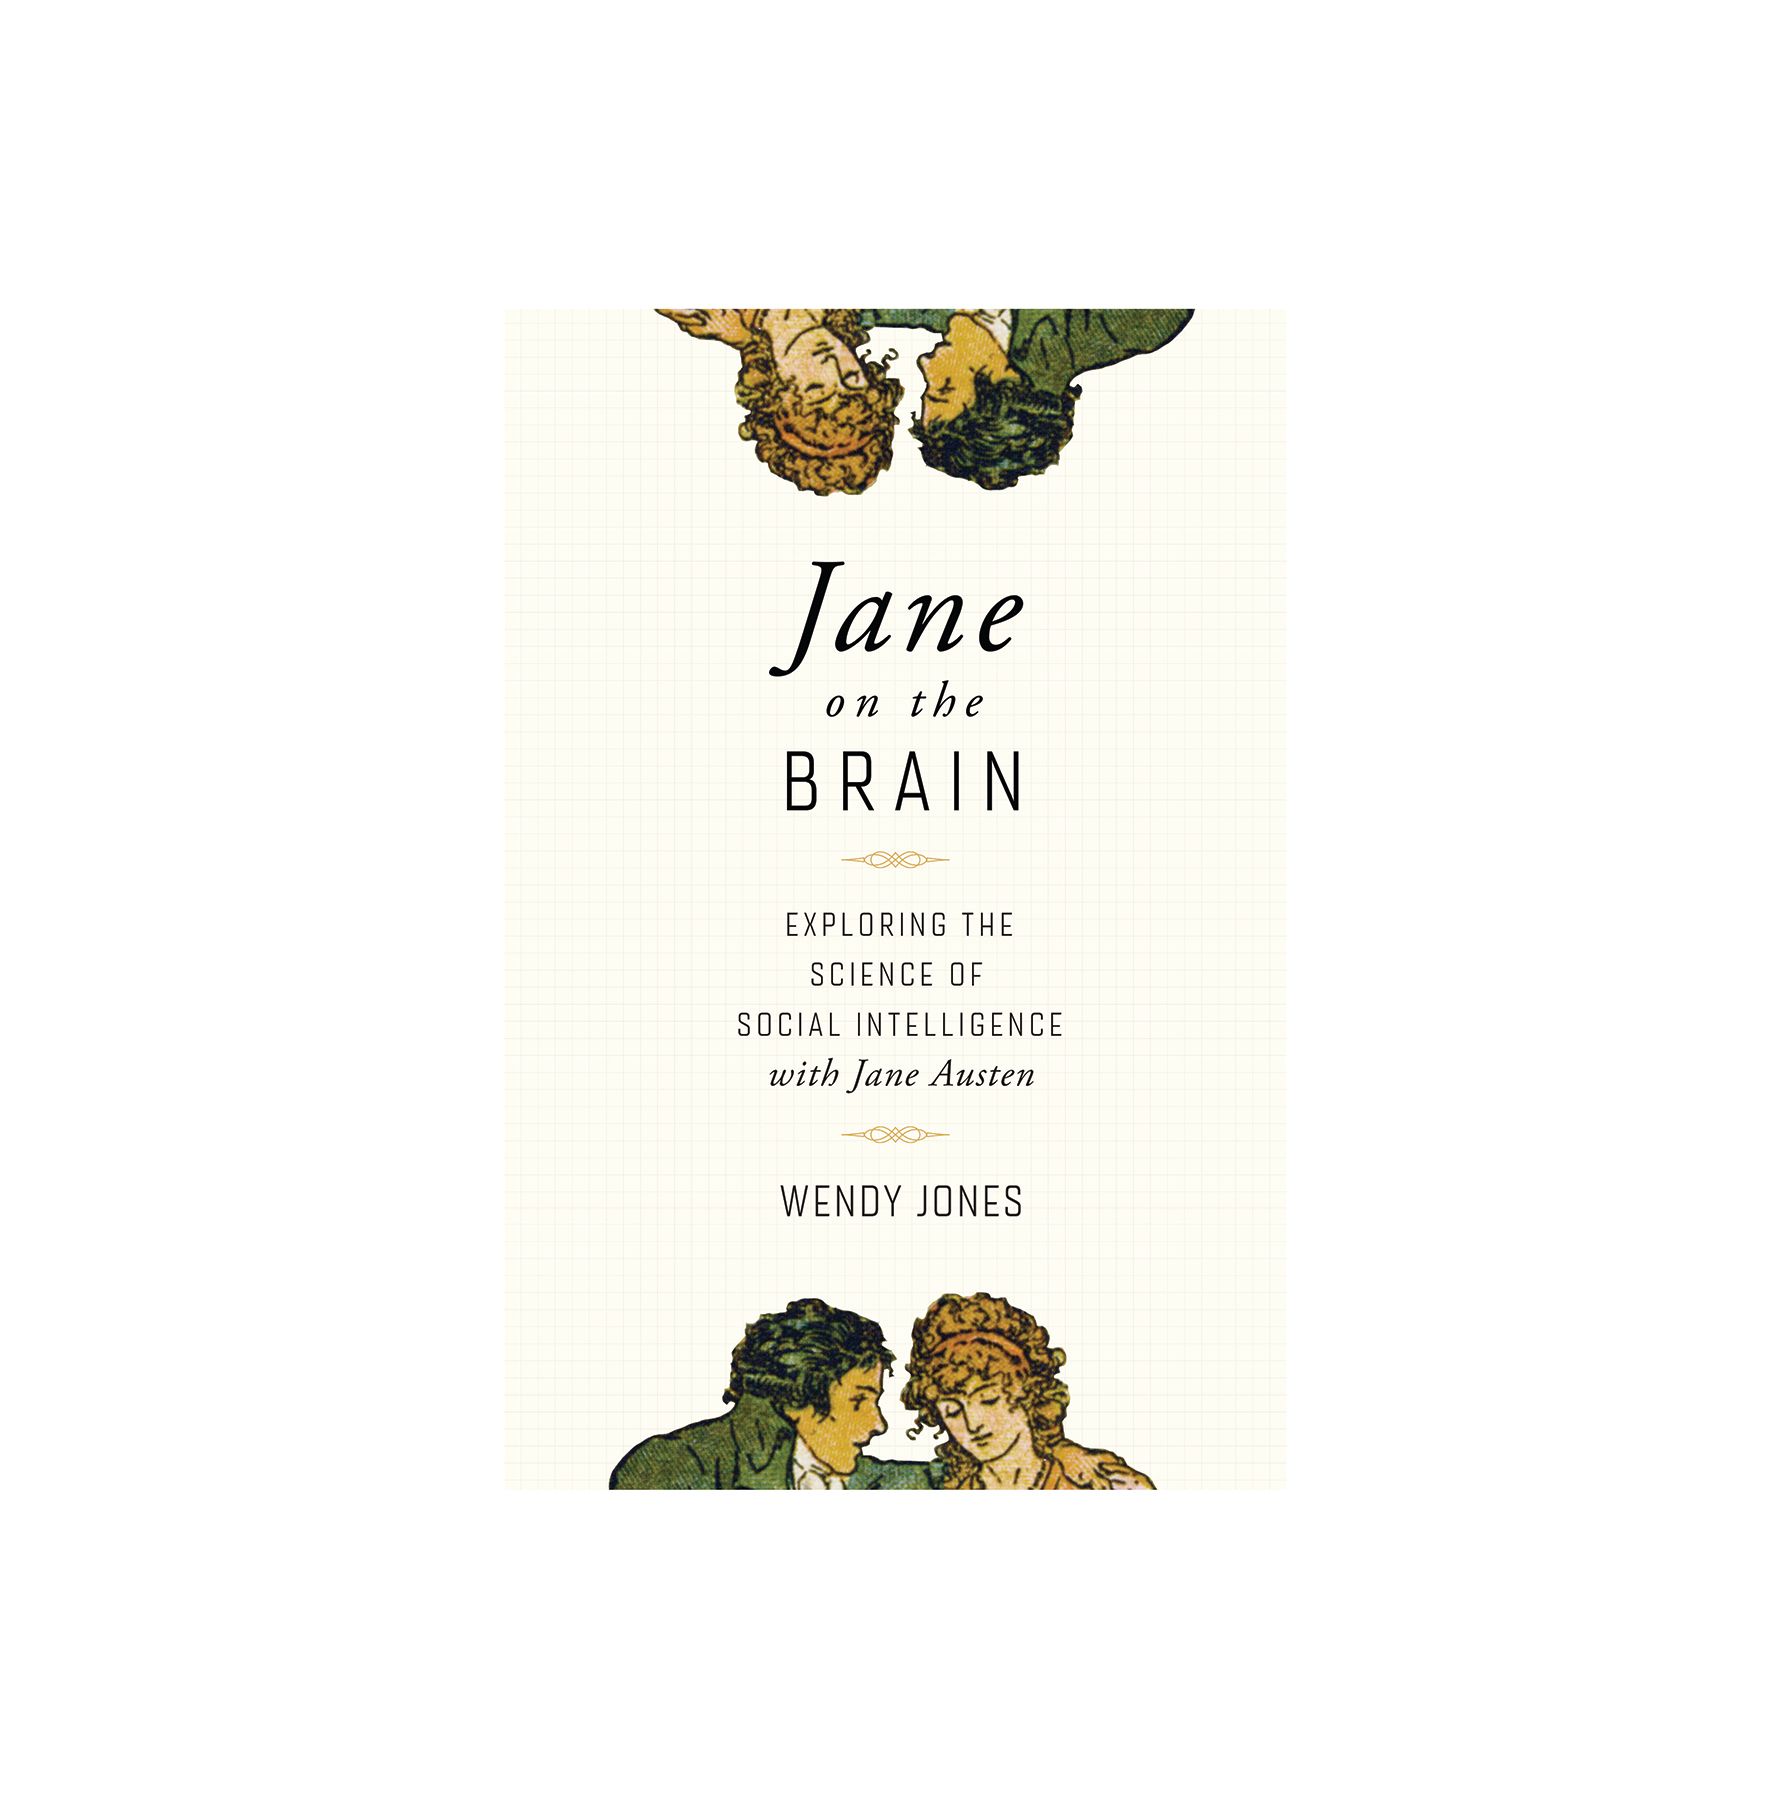 ჯეინი ტვინზე: სოციალური ინტელექტის მეცნიერების შესწავლა ჯეინ ოსტინთან ერთად, ვენდი ჯონსი